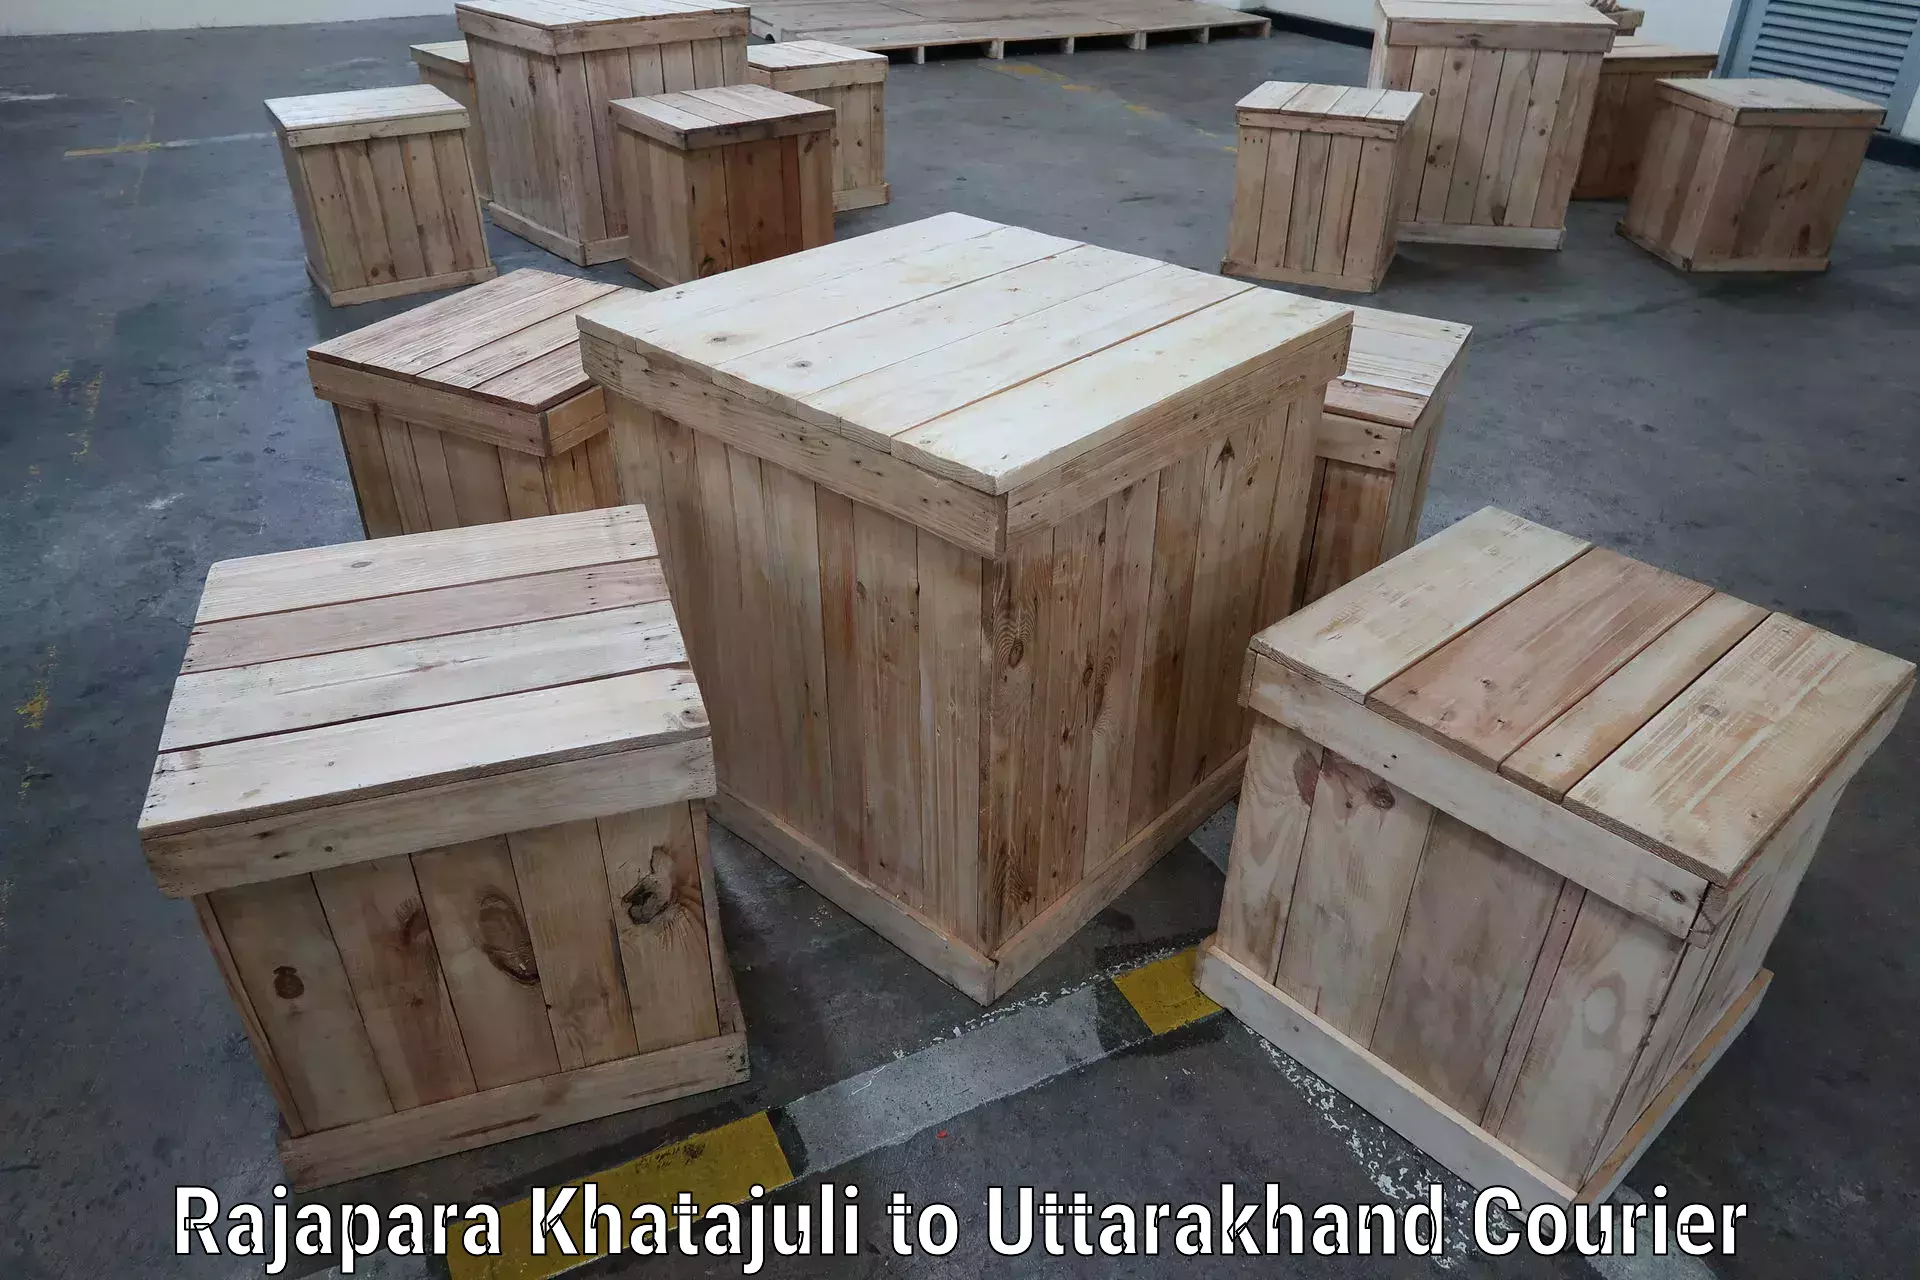 Cost-effective courier options Rajapara Khatajuli to IIT Roorkee